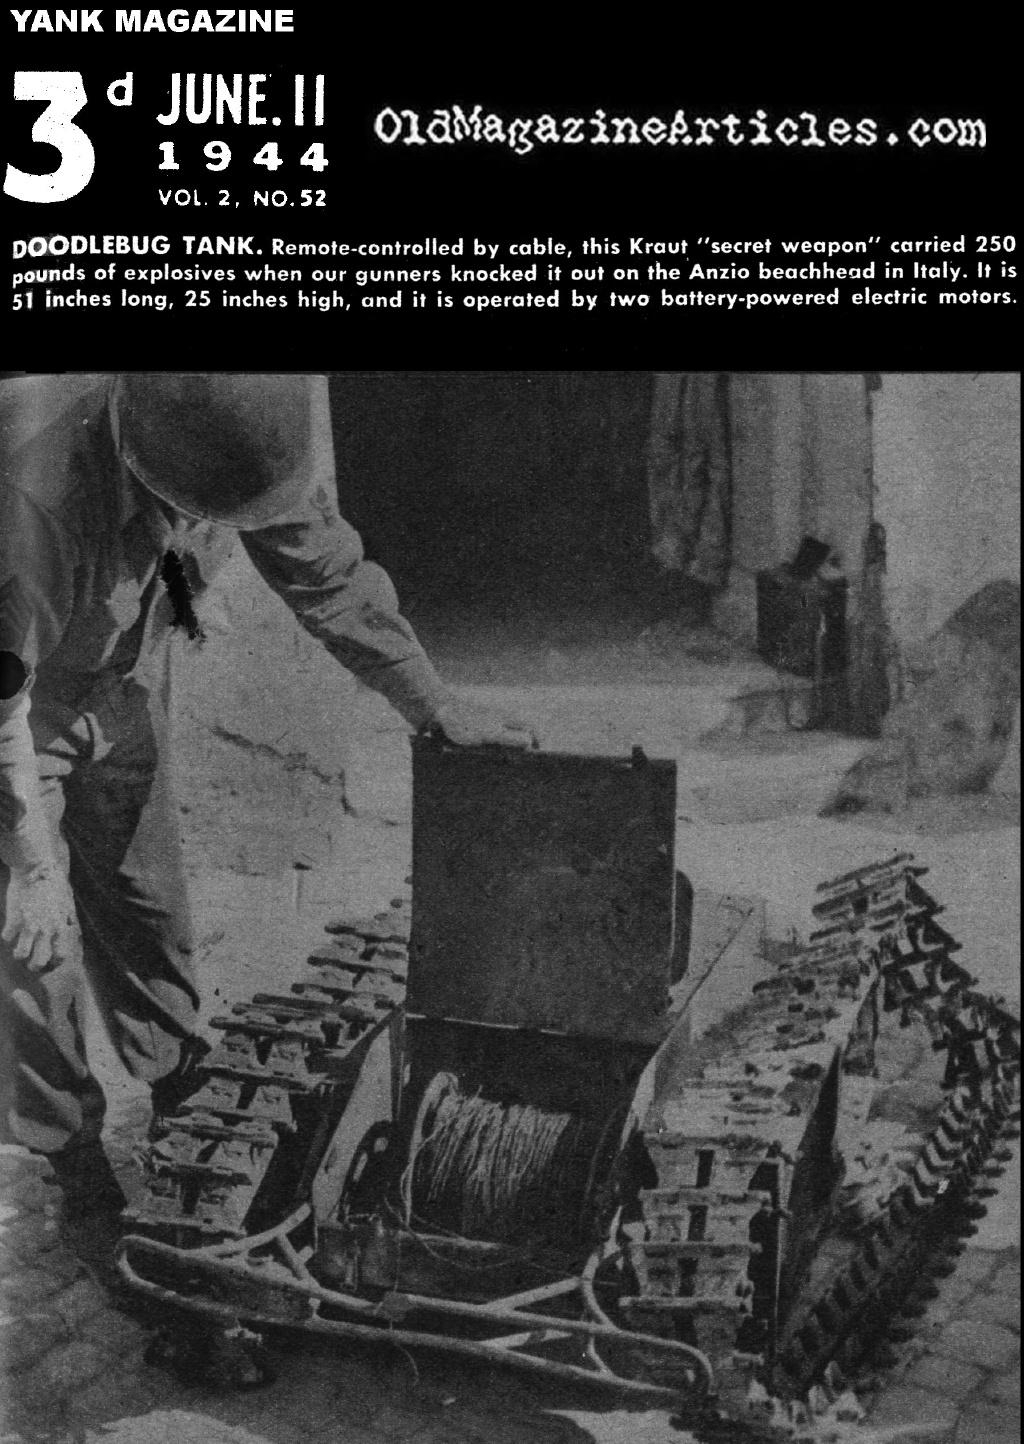 The Doodlebug Tank? (Yank Magazine, 1944)